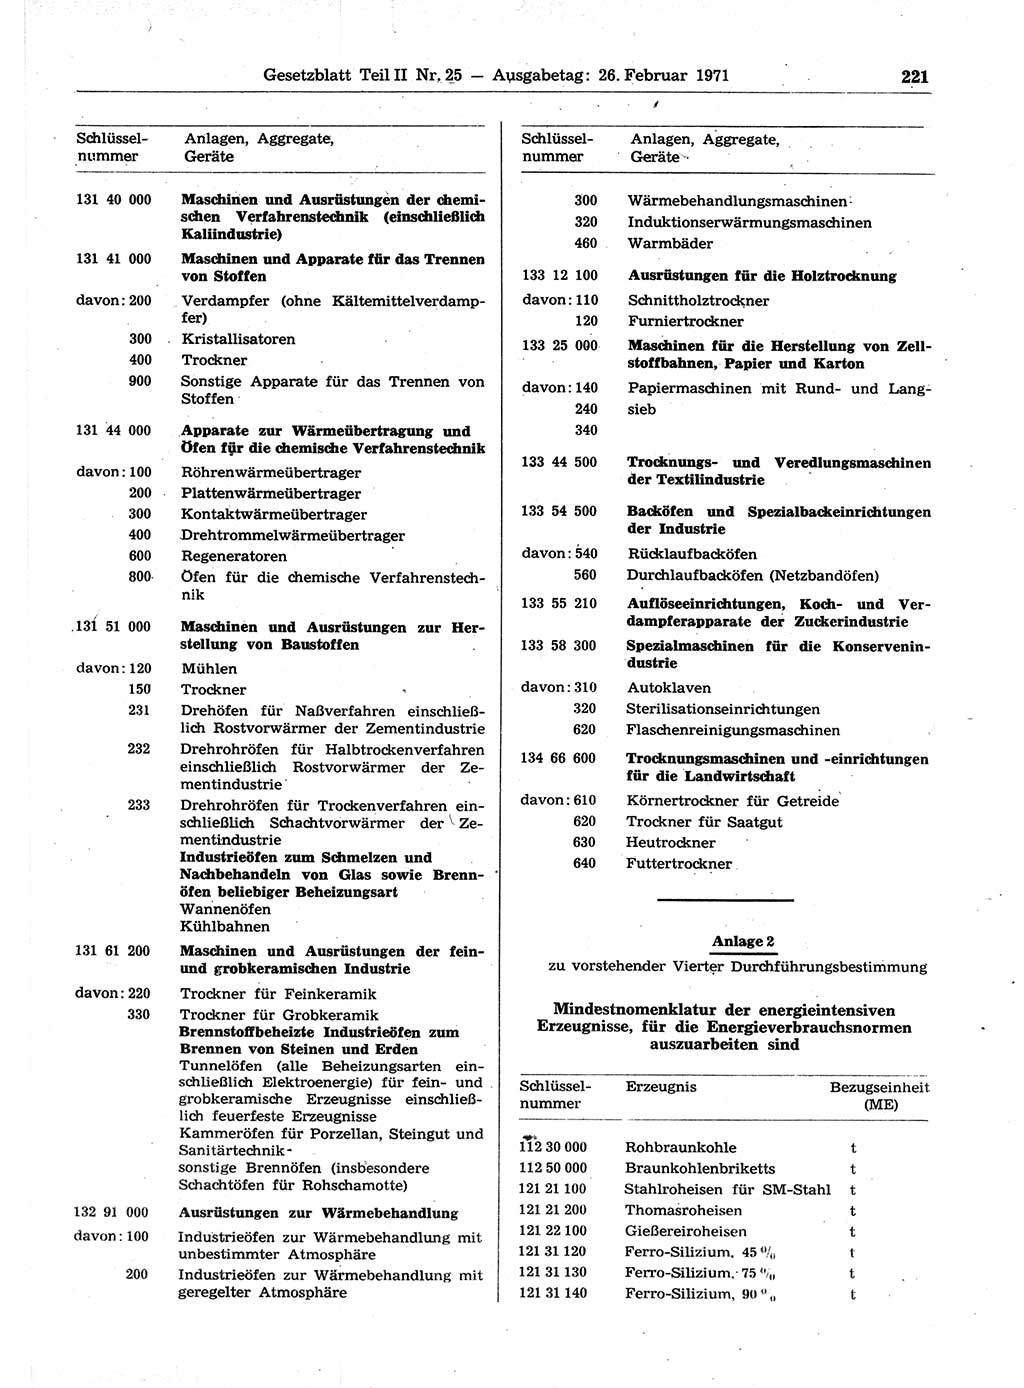 Gesetzblatt (GBl.) der Deutschen Demokratischen Republik (DDR) Teil ⅠⅠ 1971, Seite 221 (GBl. DDR ⅠⅠ 1971, S. 221)